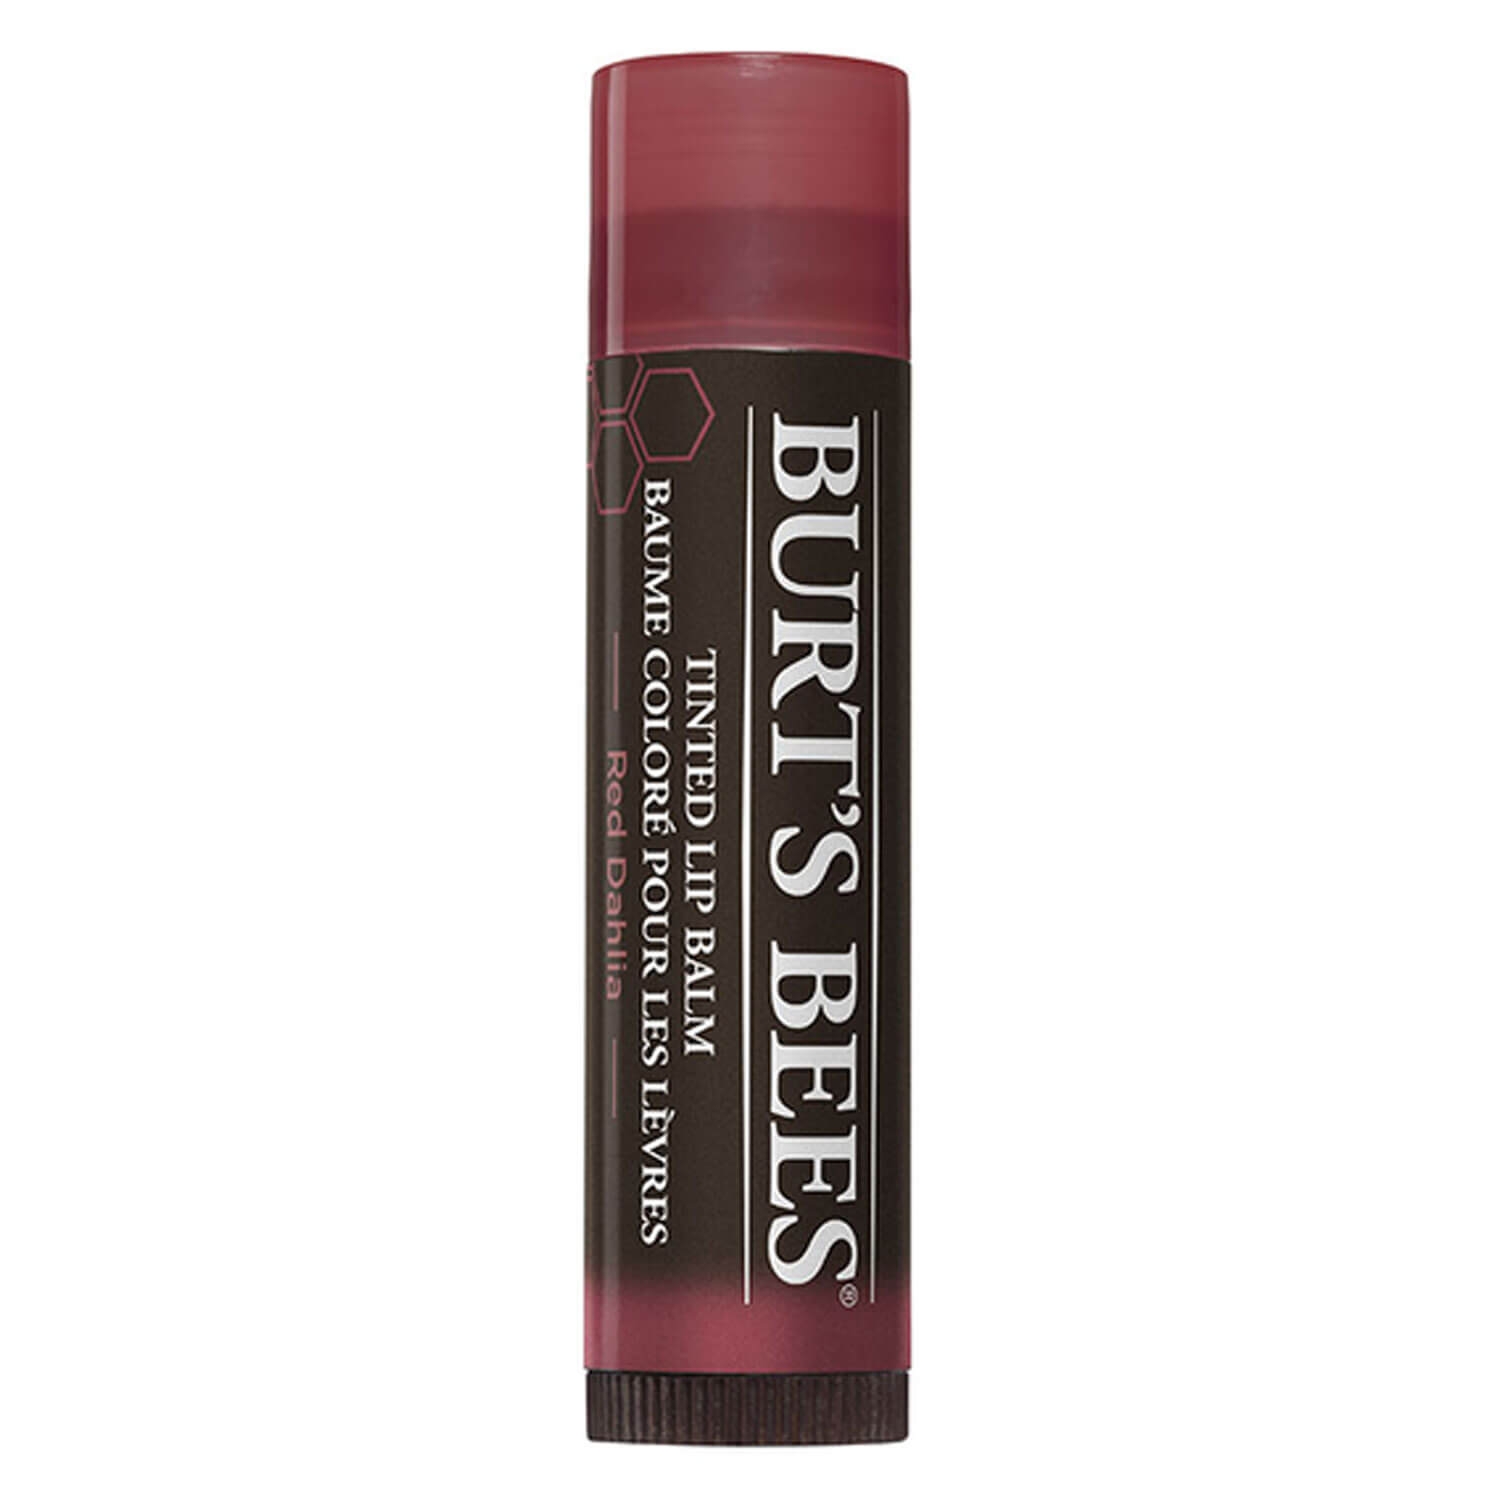 Produktbild von Burt's Bees - Tinted Lip Balm Red Dahlia